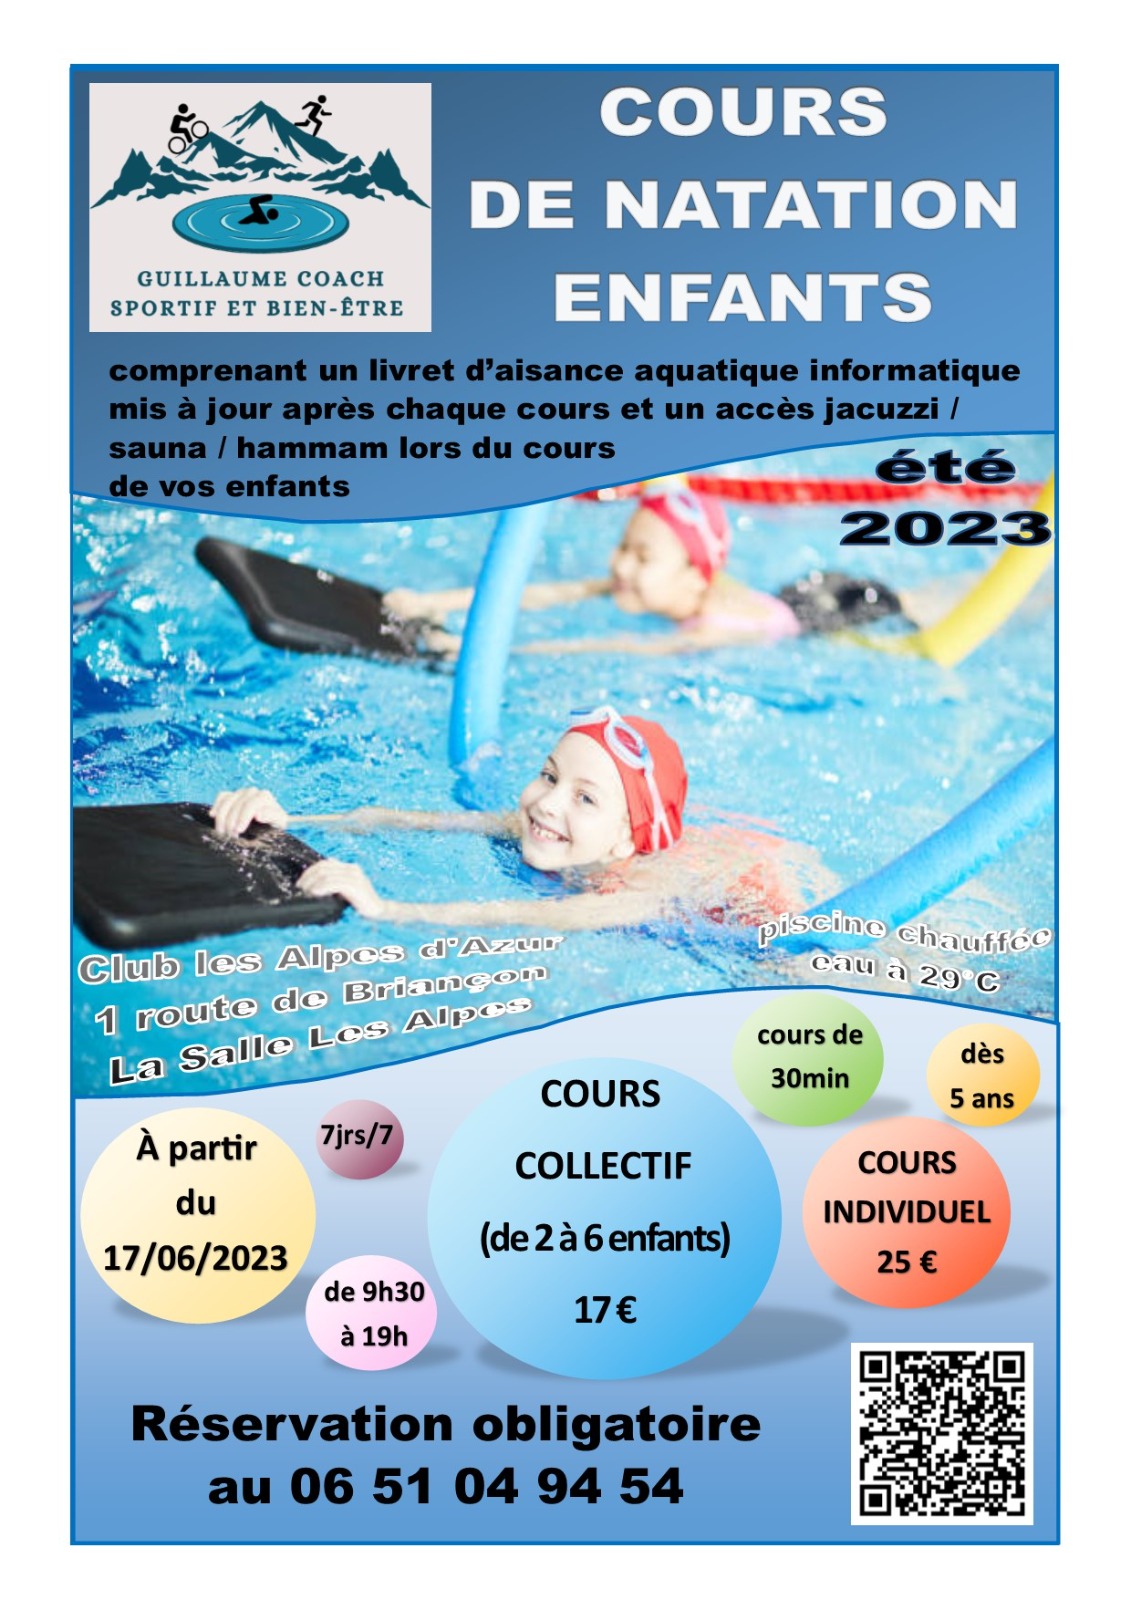 Affiche proposant des cours de natation pour enfant avec informations et horaires des cours